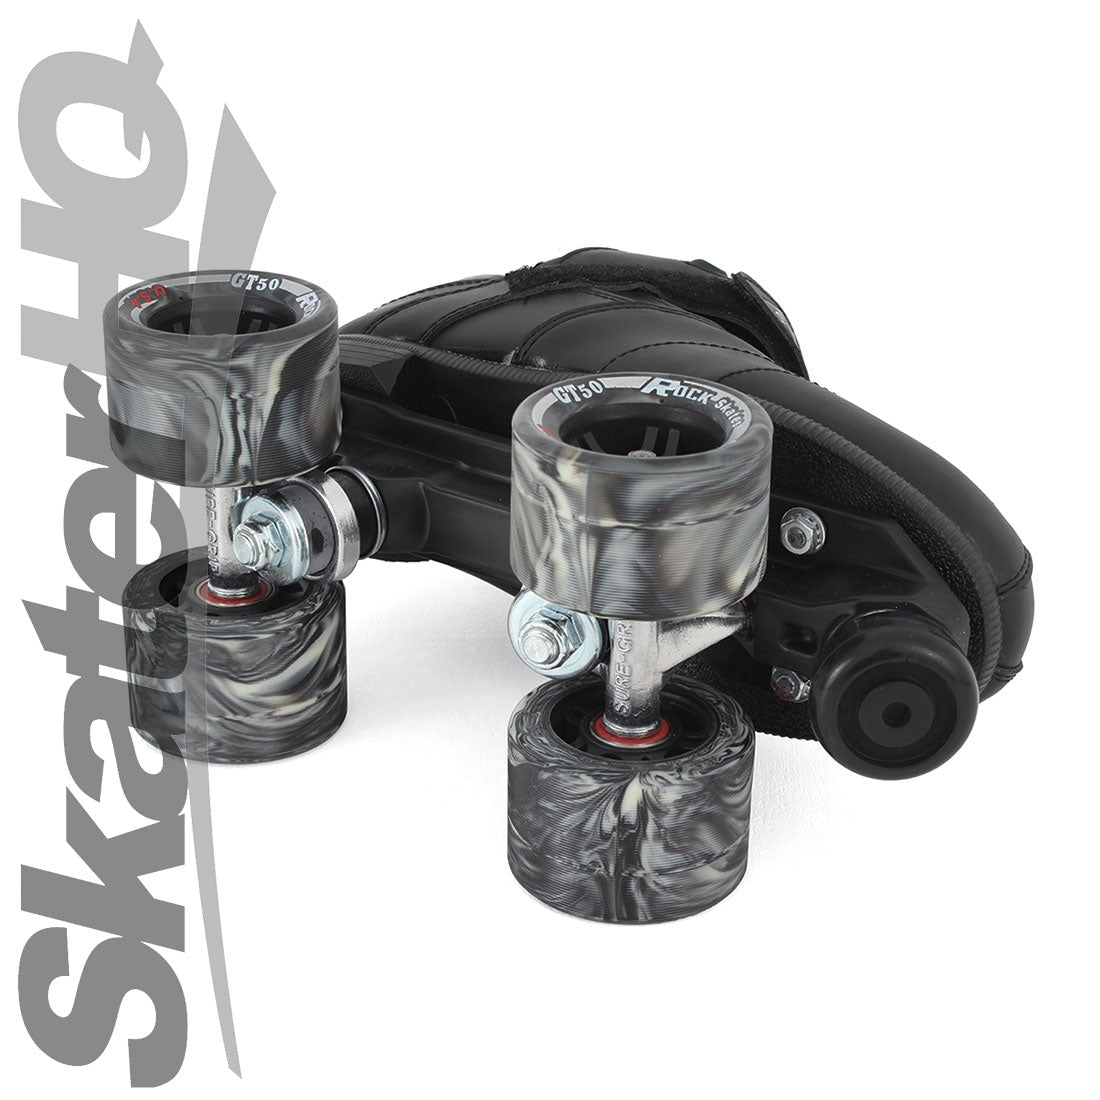 Sure-Grip Rock GT50 Black 1US/ EU32 Roller Skates